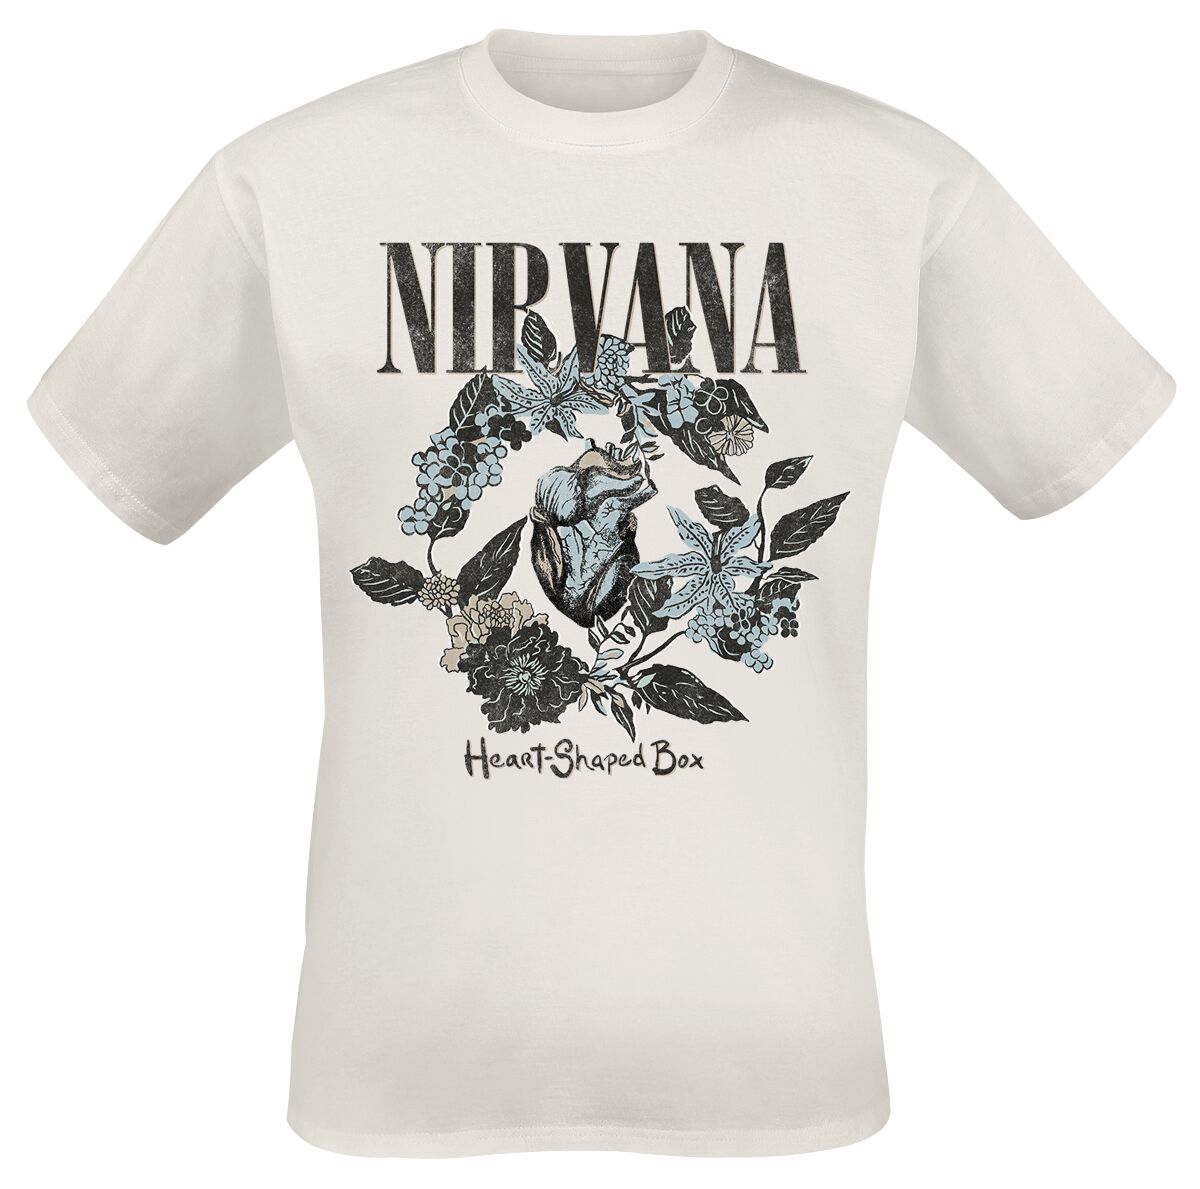 Nirvana T-Shirt - Heart Shape Box - S bis 3XL - für Männer - Größe XL - weiß  - Lizenziertes Merchandise!